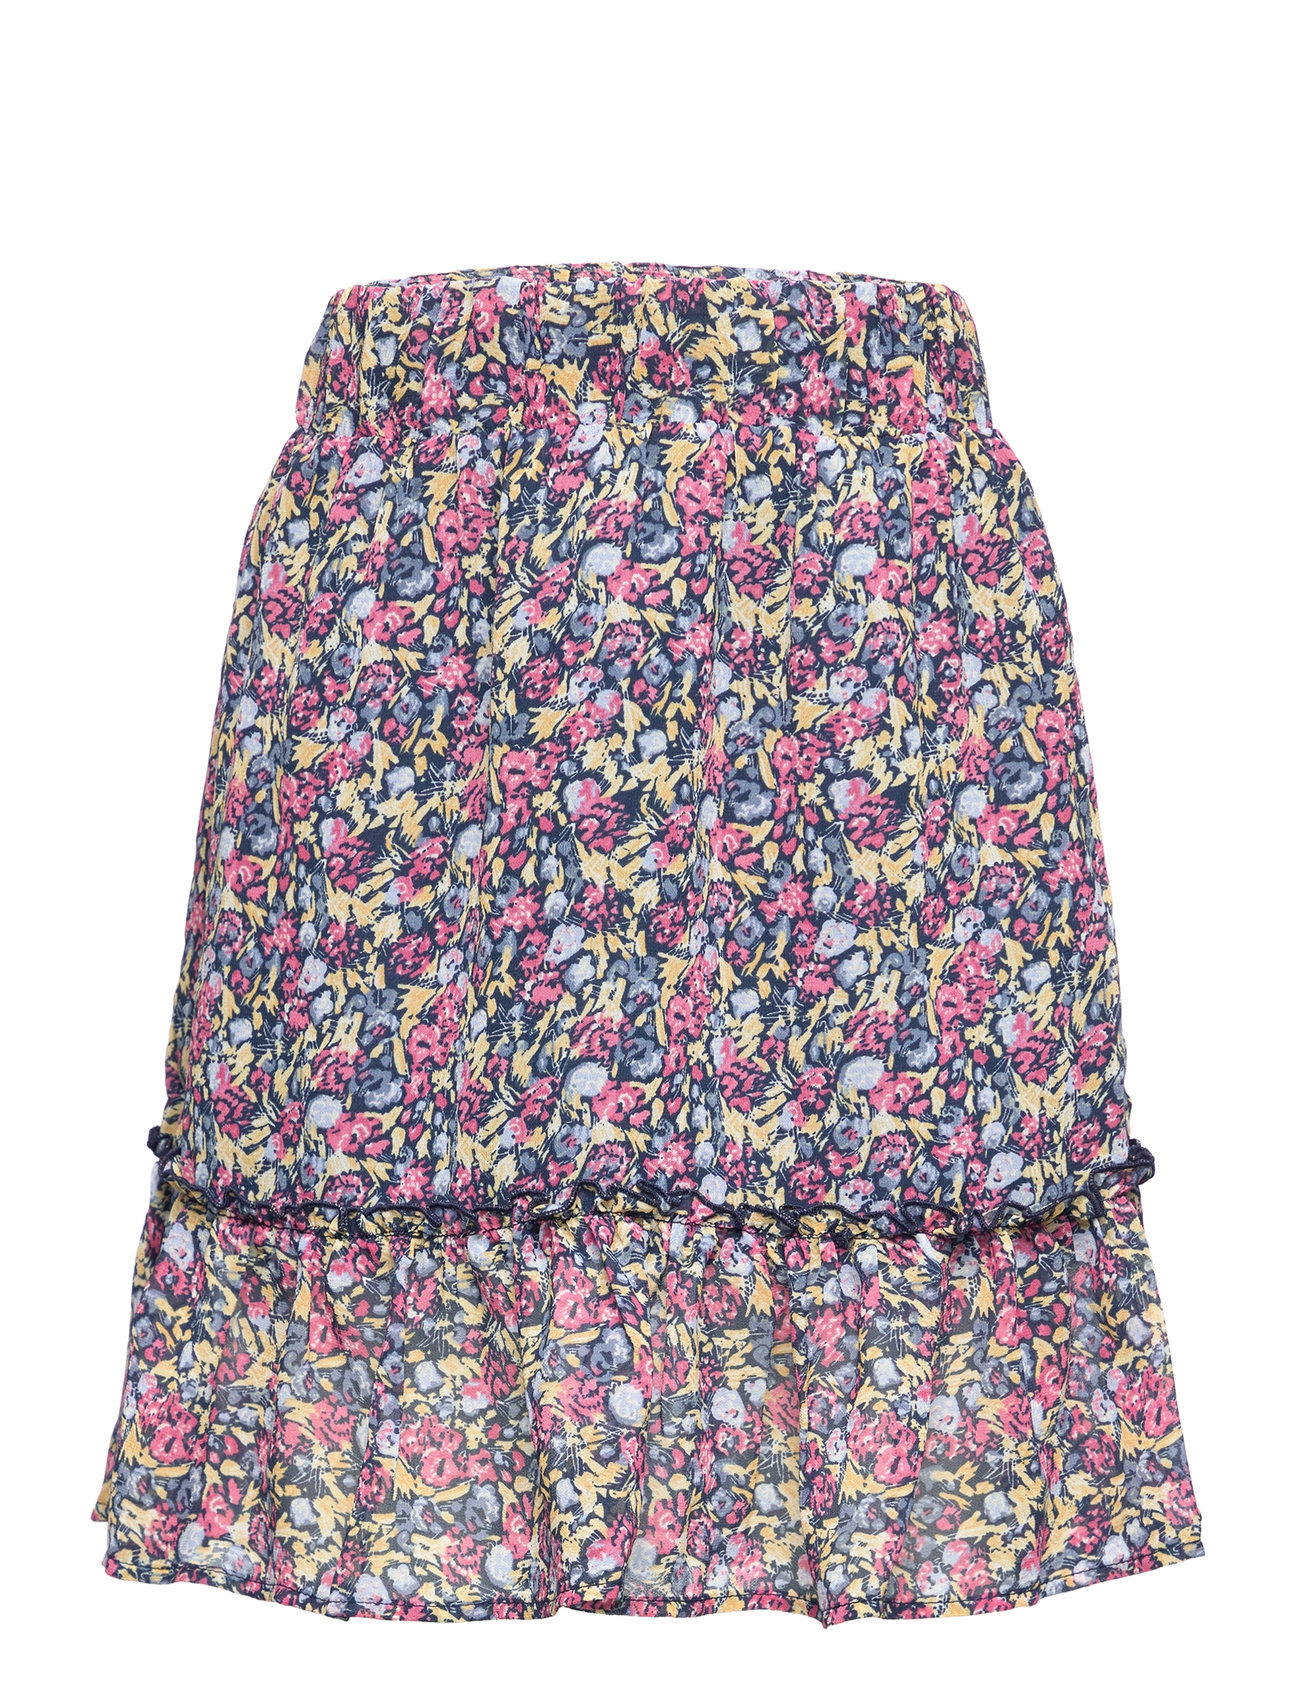 Nkflisa Skirt Dresses & Skirts Skirts Short Skirts Multi/patterned Name It